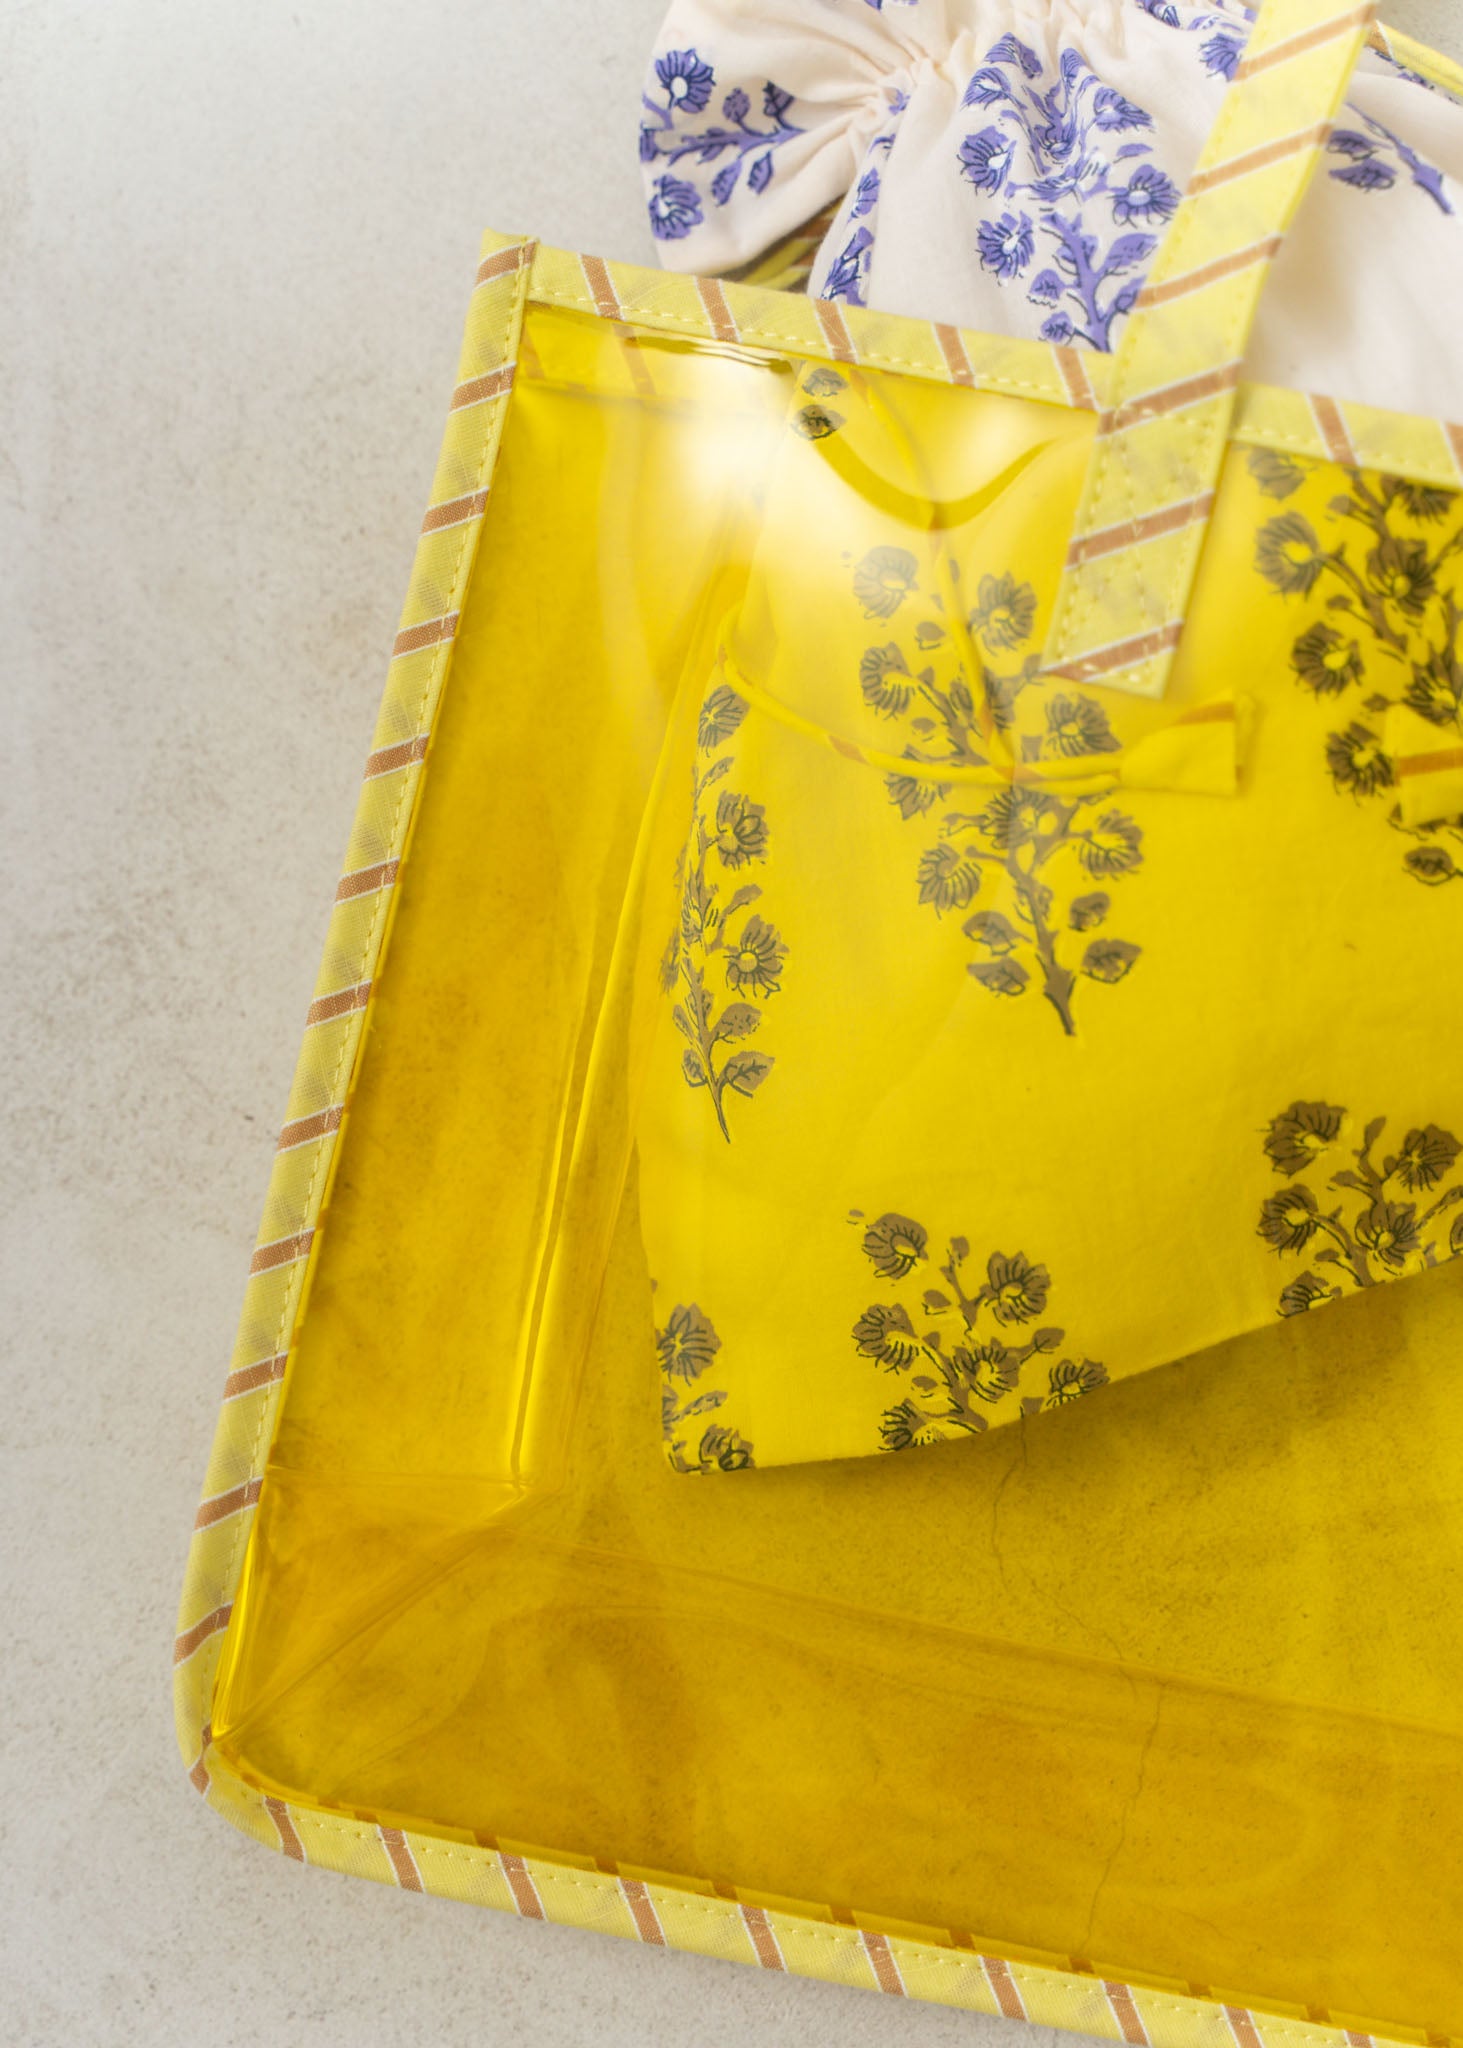 【5/10 10時発売】PVC Tote Bag With Drawstring Bag And Charm